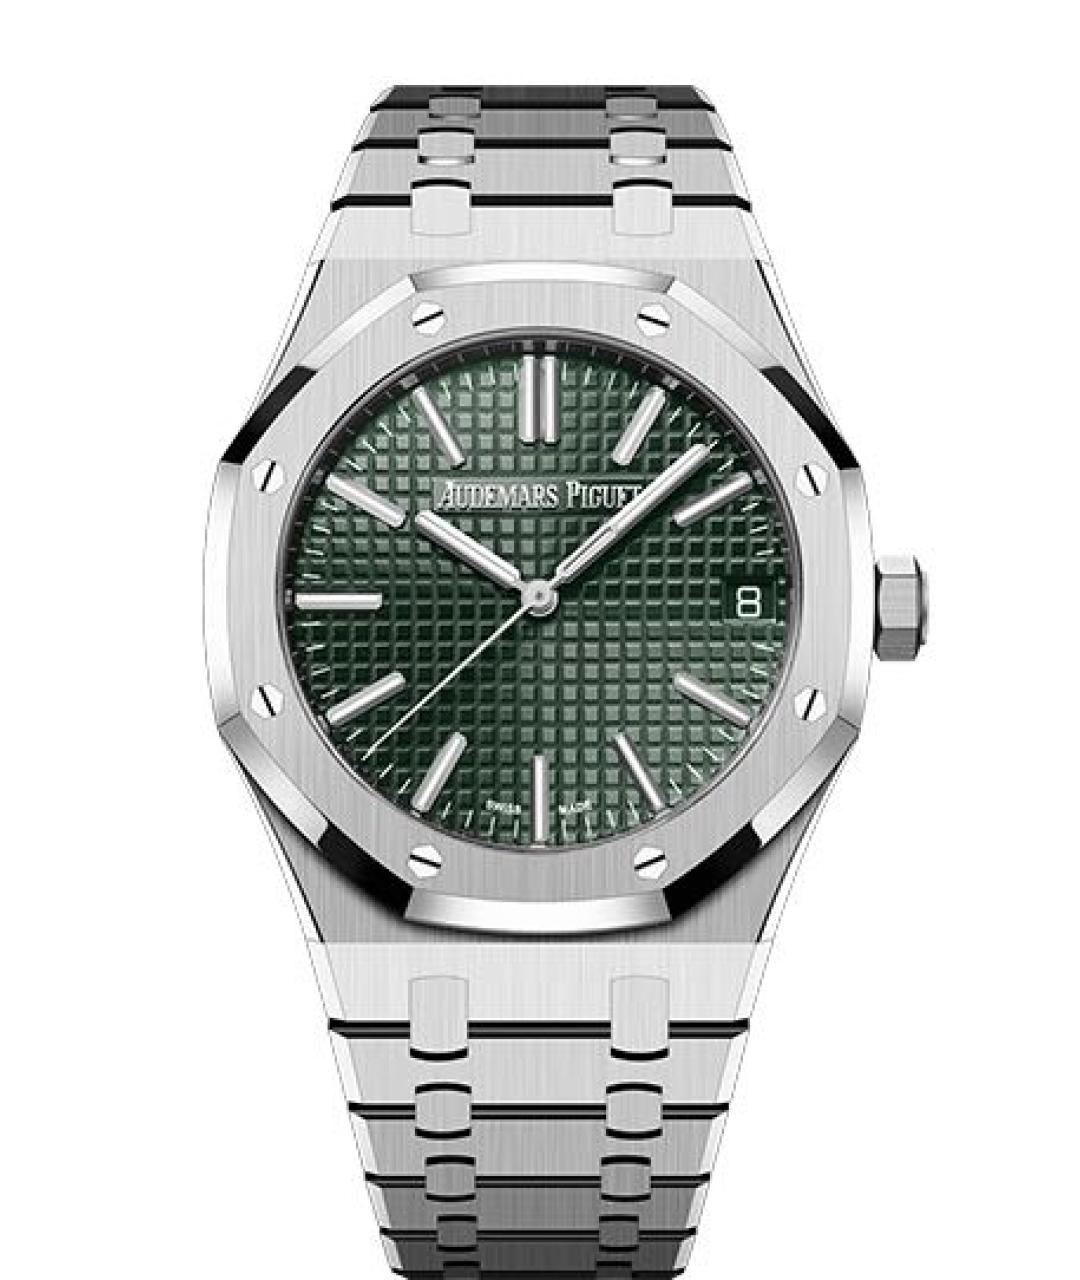 Audemars Piguet Зеленые часы, фото 1